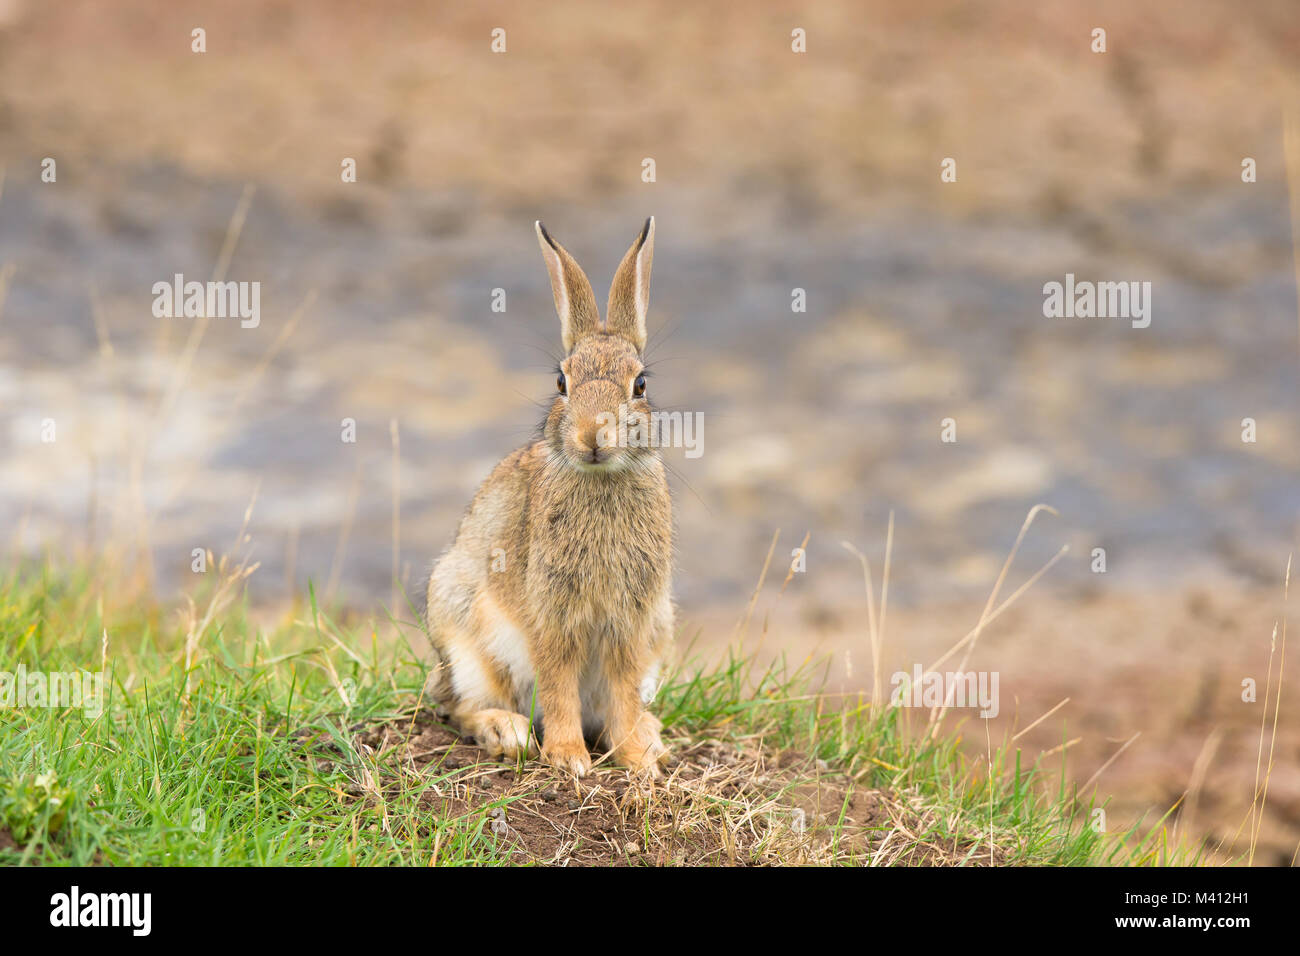 Vorderansicht Nahaufnahme des alarmiert wilden Kaninchens aus Großbritannien (Orycolagus cuniculus), isoliert auf Gras, das aufrecht auf seinen Haunsen sitzt und hoch anstarrende, lange Hünenohren anstarrt. Stockfoto